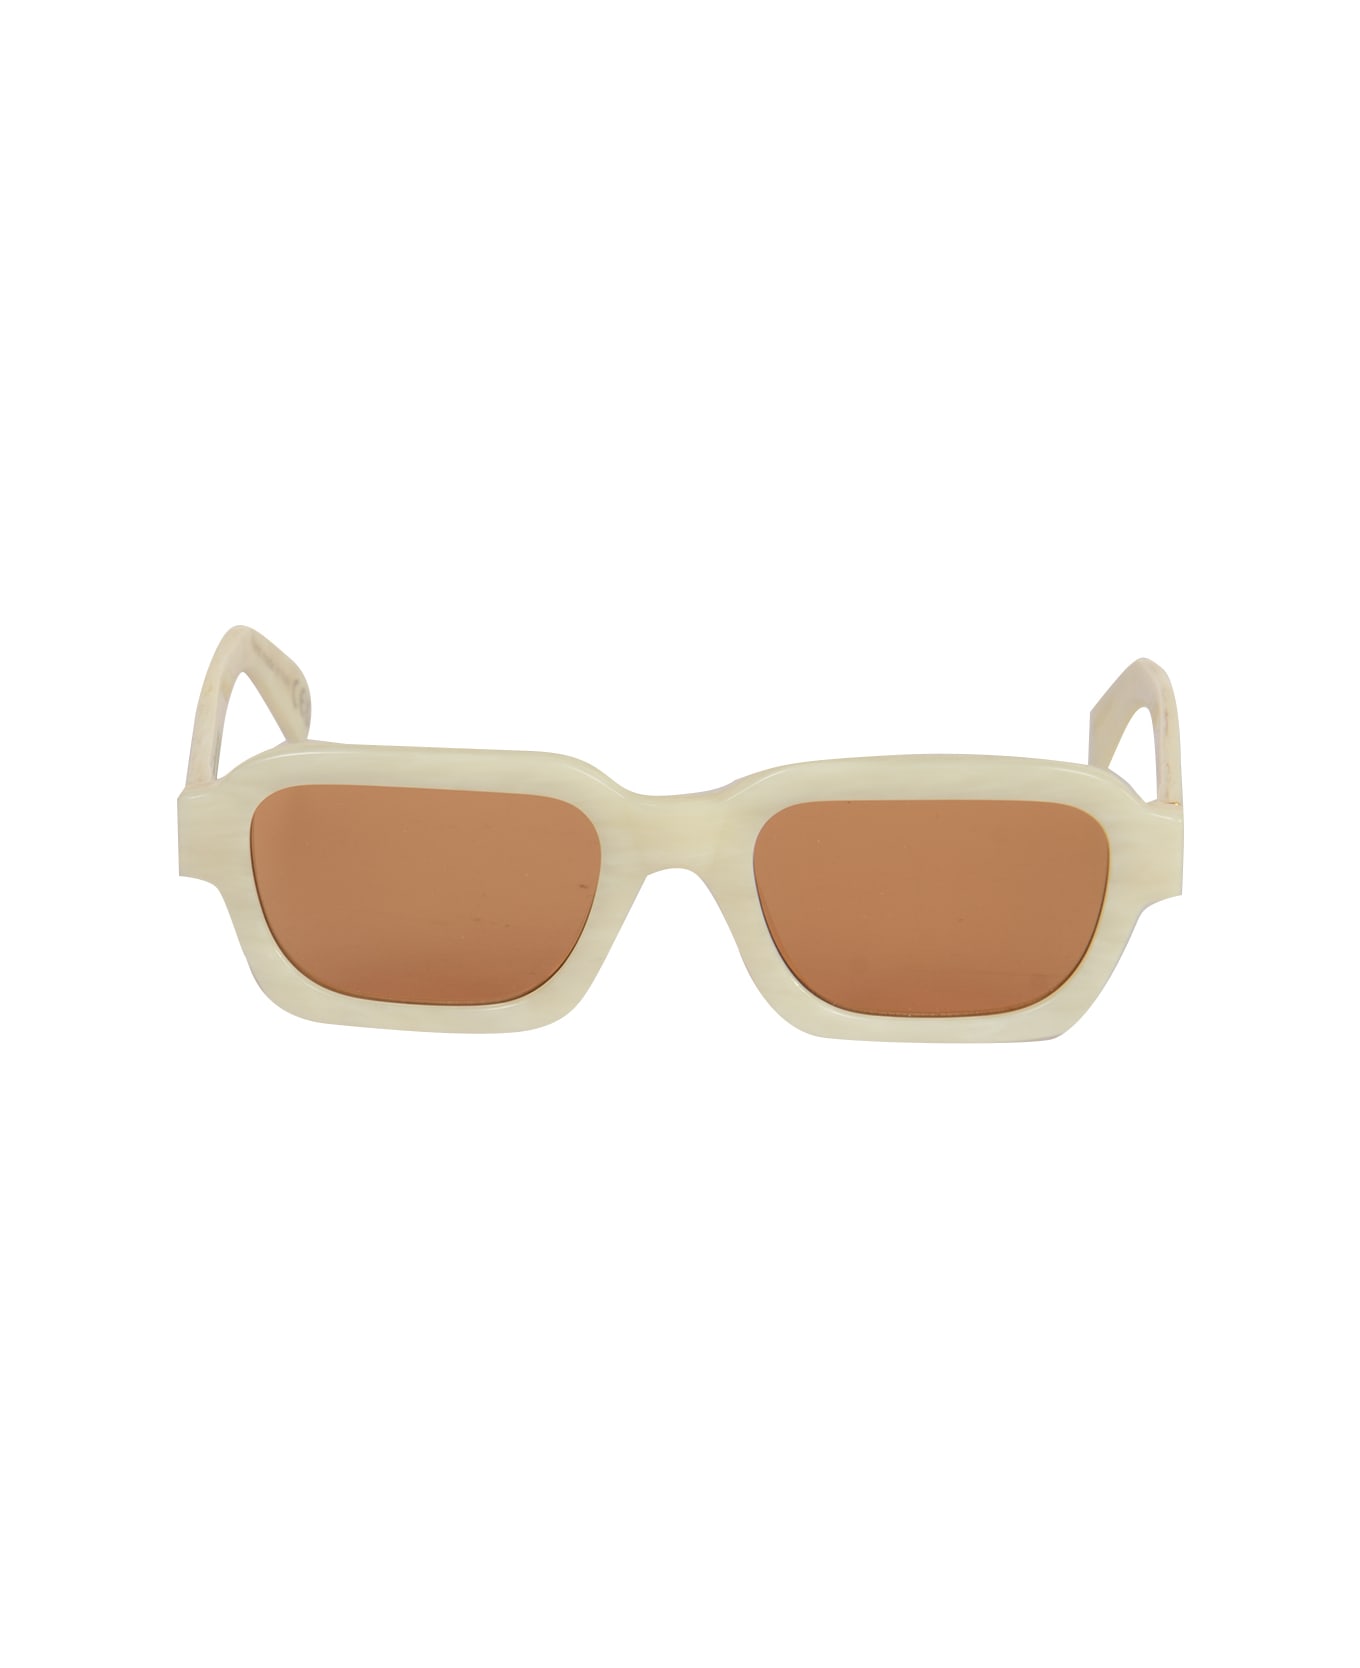 PACCBET Retro Super Future Sunglasses - White